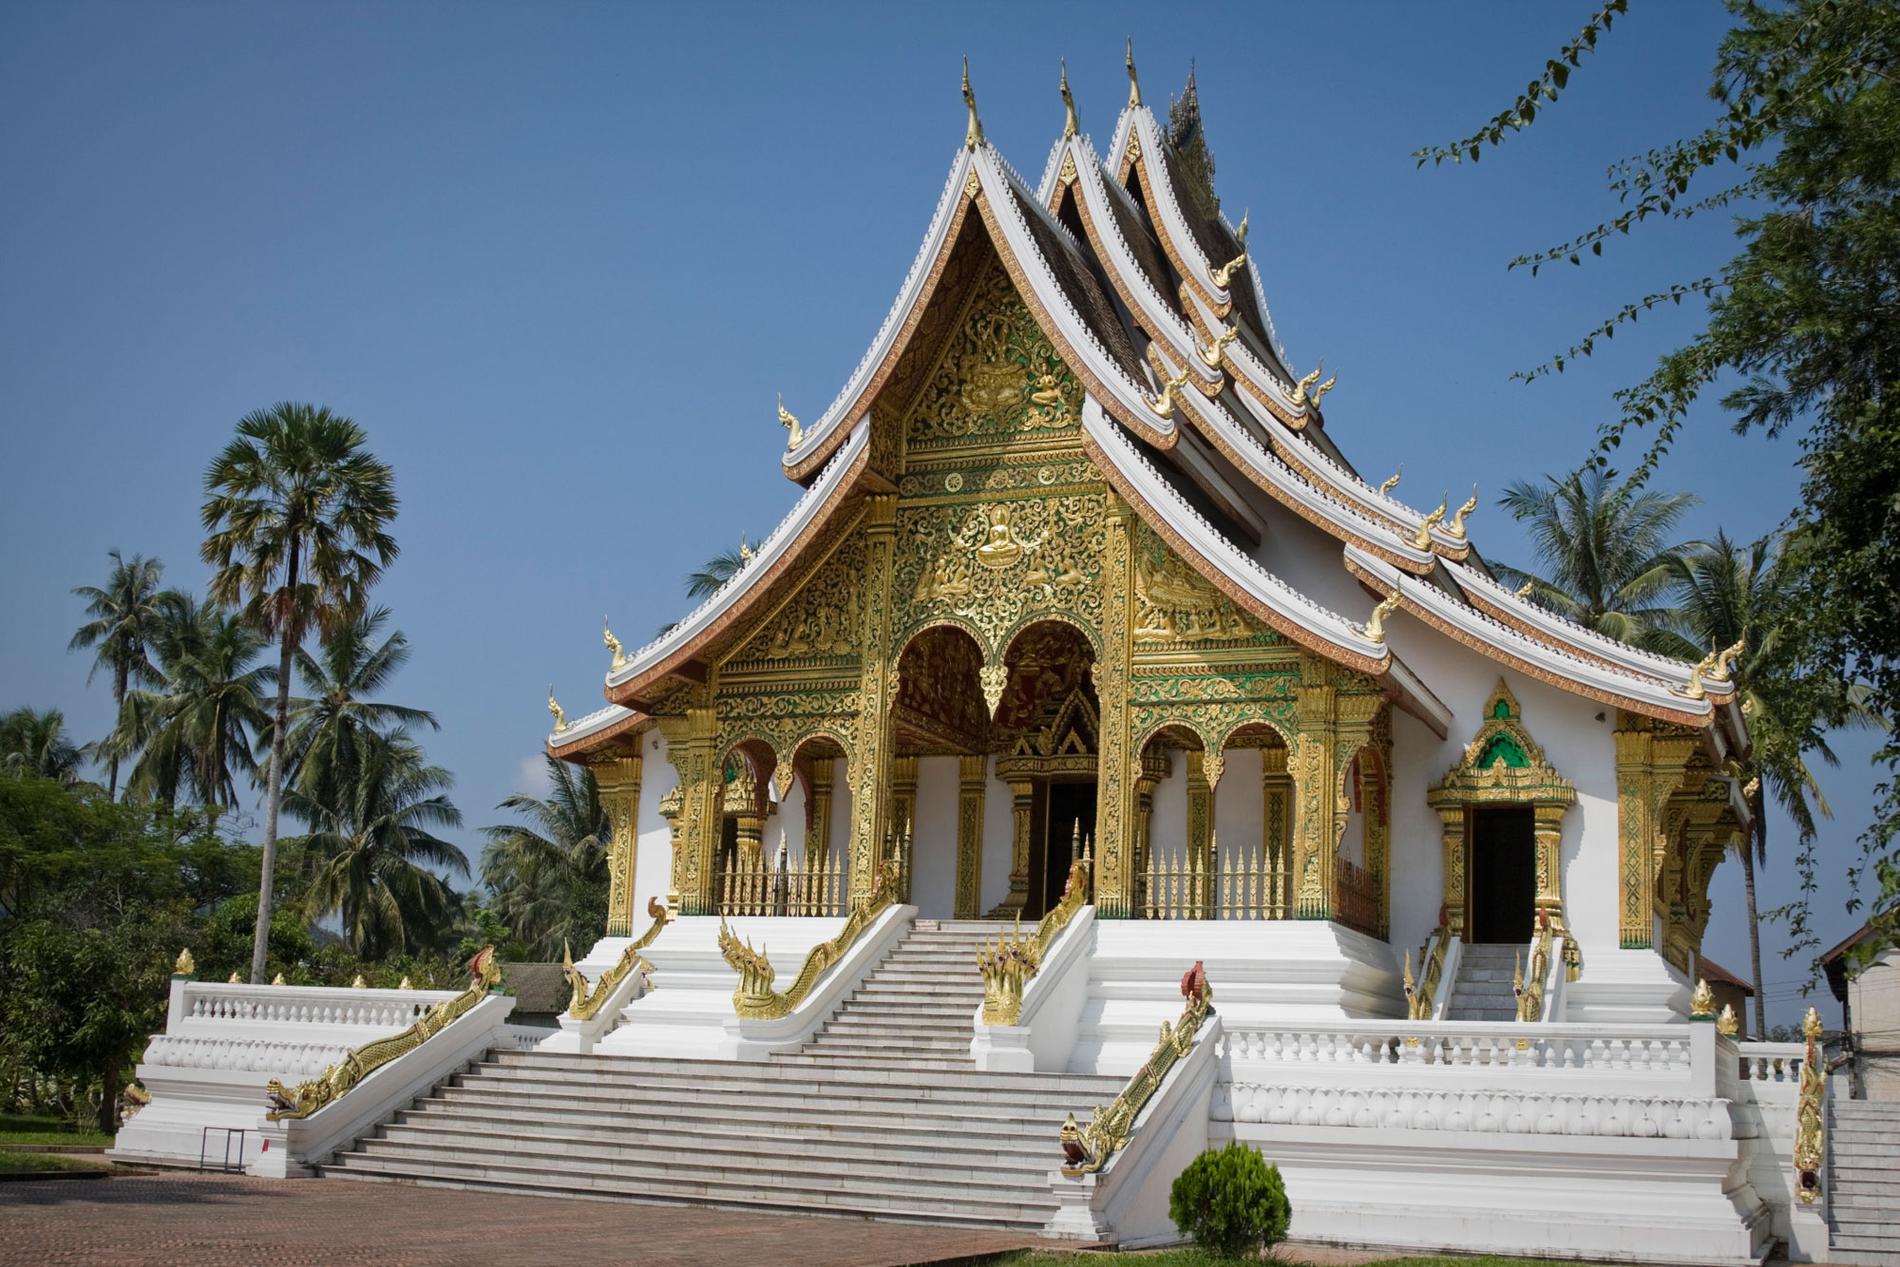 1. Luang Prabang, Laos För tredje året i rad toppar Luang Prabang listan. Staden är ett av UNESCO:s världsarv – inte minst för sina gyllene tempel, enastående arkitektur, fina floder och vackra vattenfall.